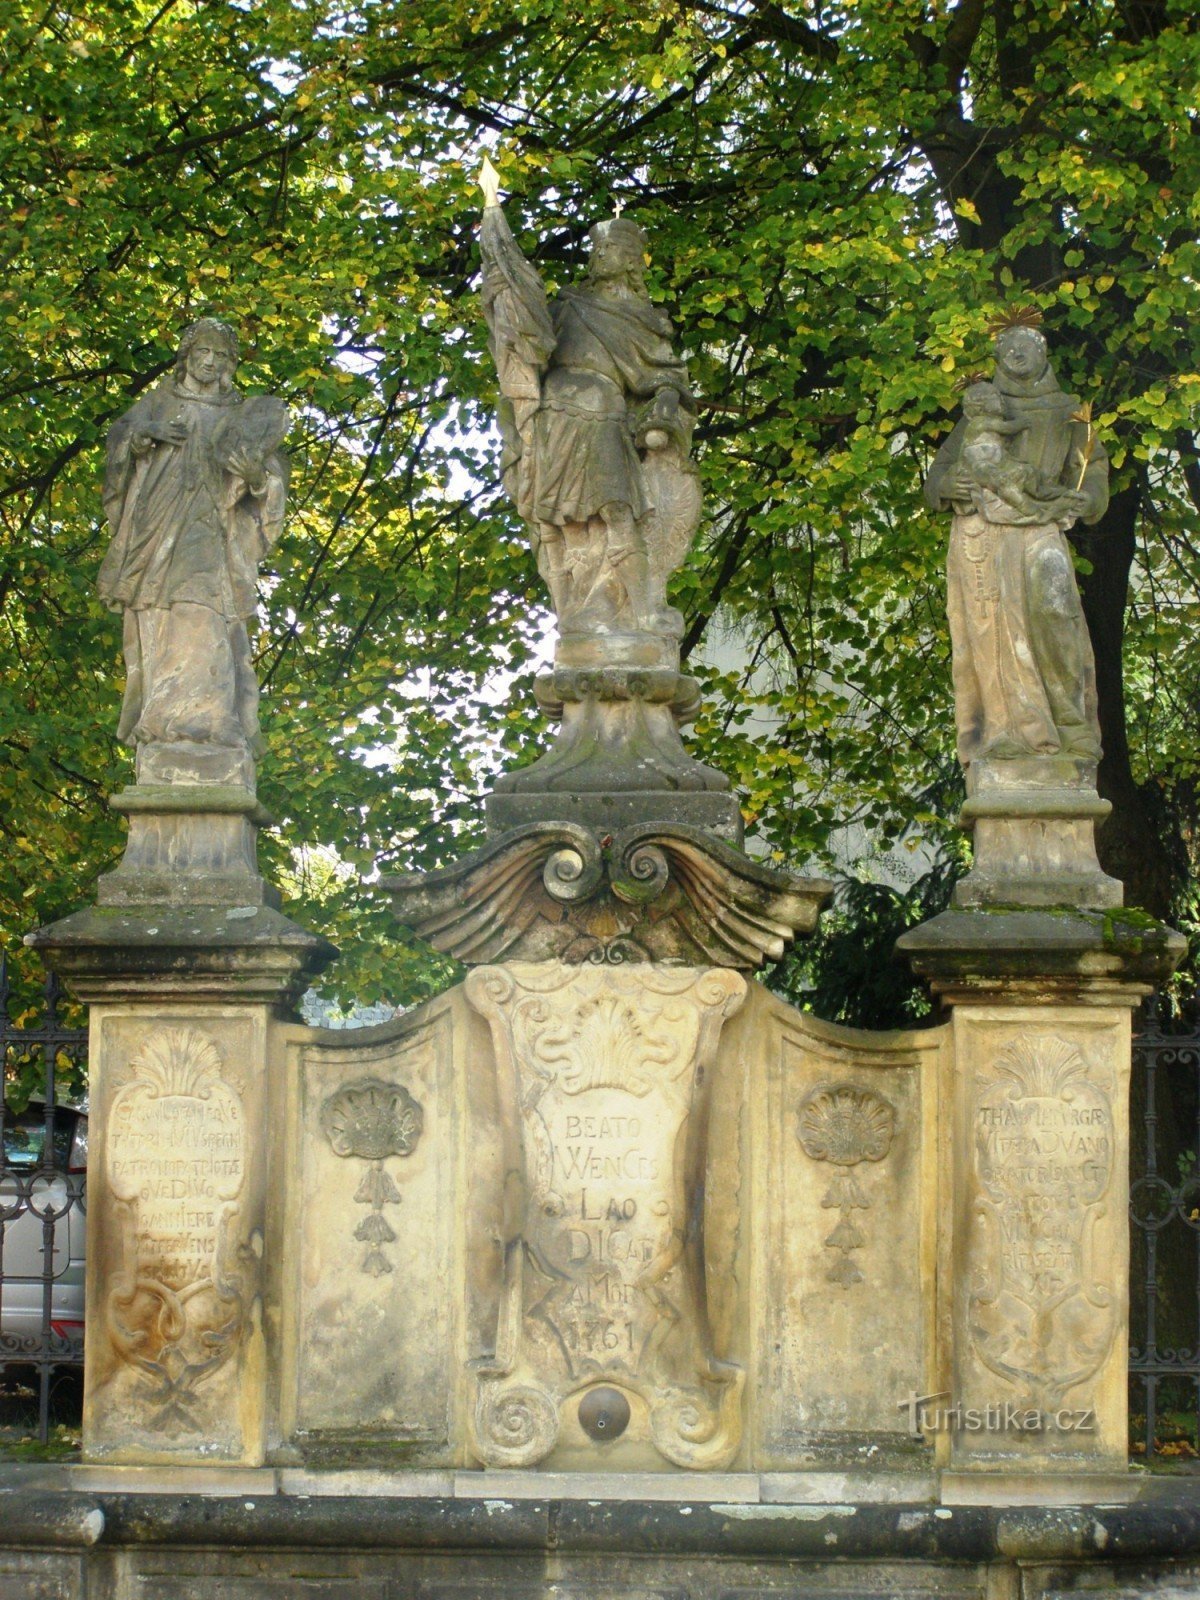 Turnov - springvand med en statue af St. Wenceslas